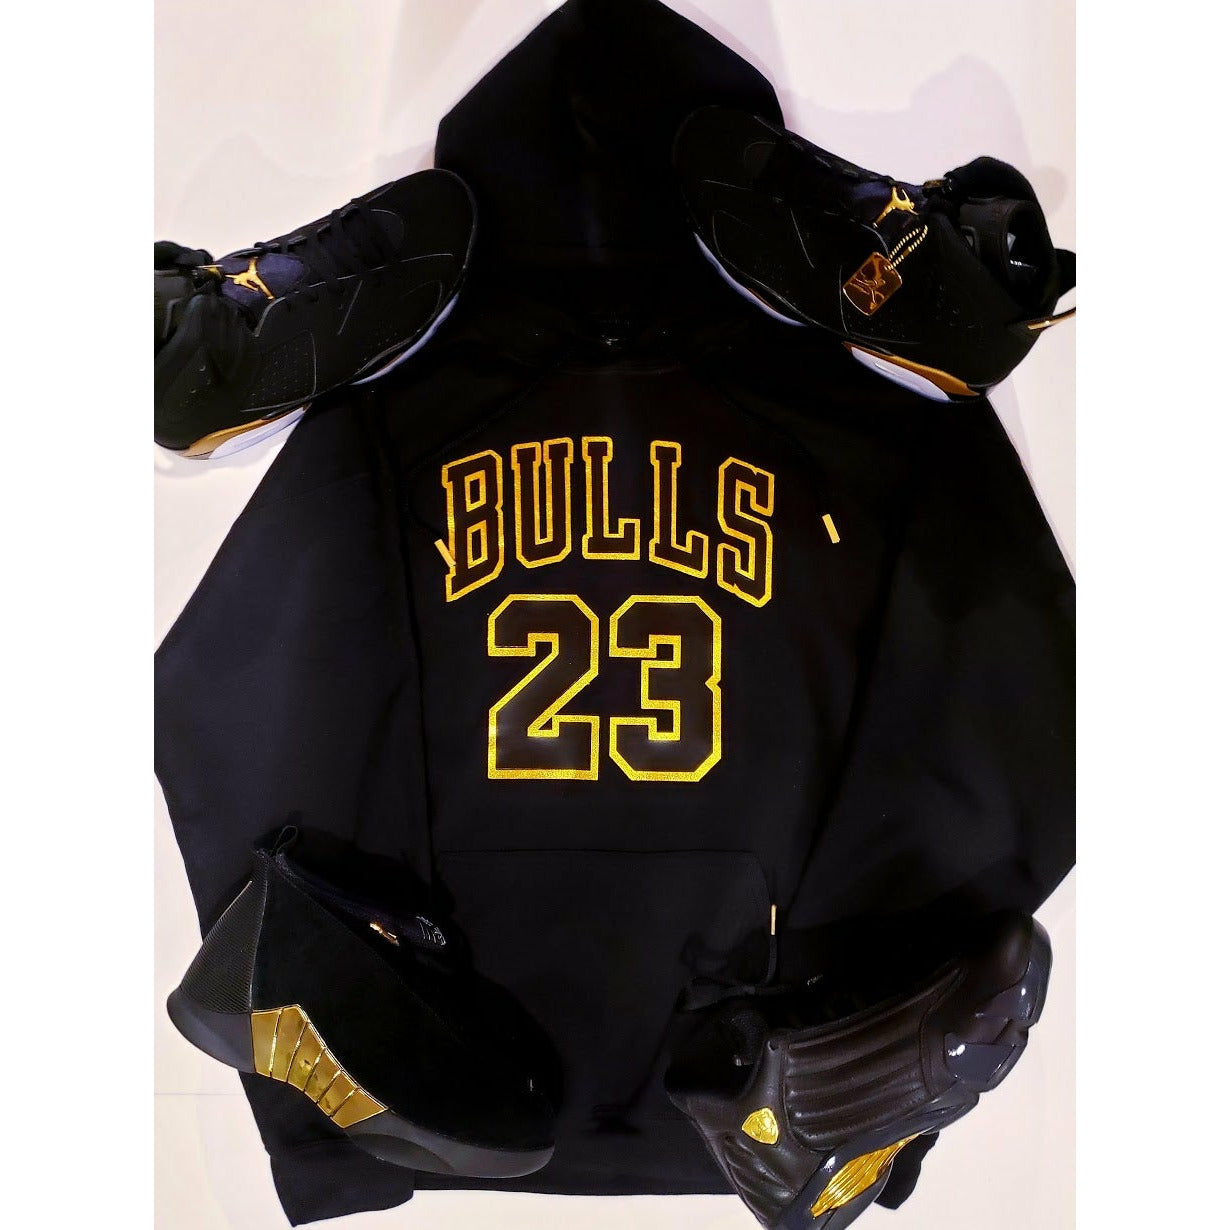 Air Jordan X Michael Jordan Chicago Bulls T-shirt, hoodie, sweater